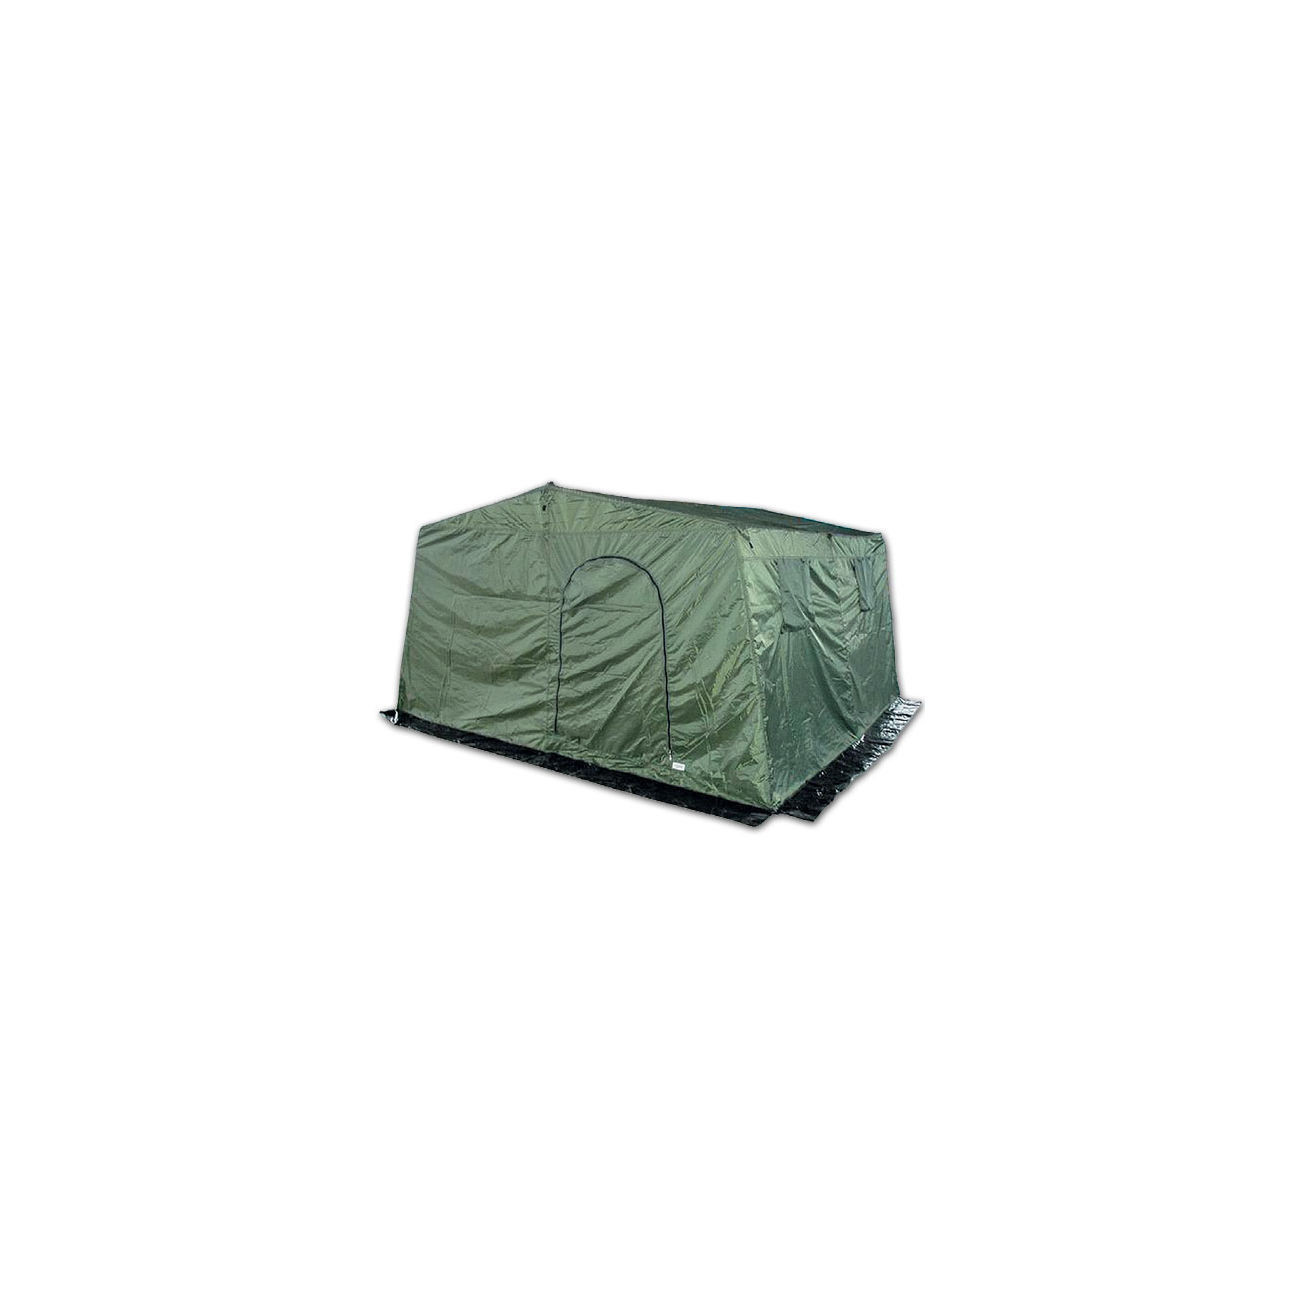 Mannschaftszelt Army Zelt für 6 Personen, oliv